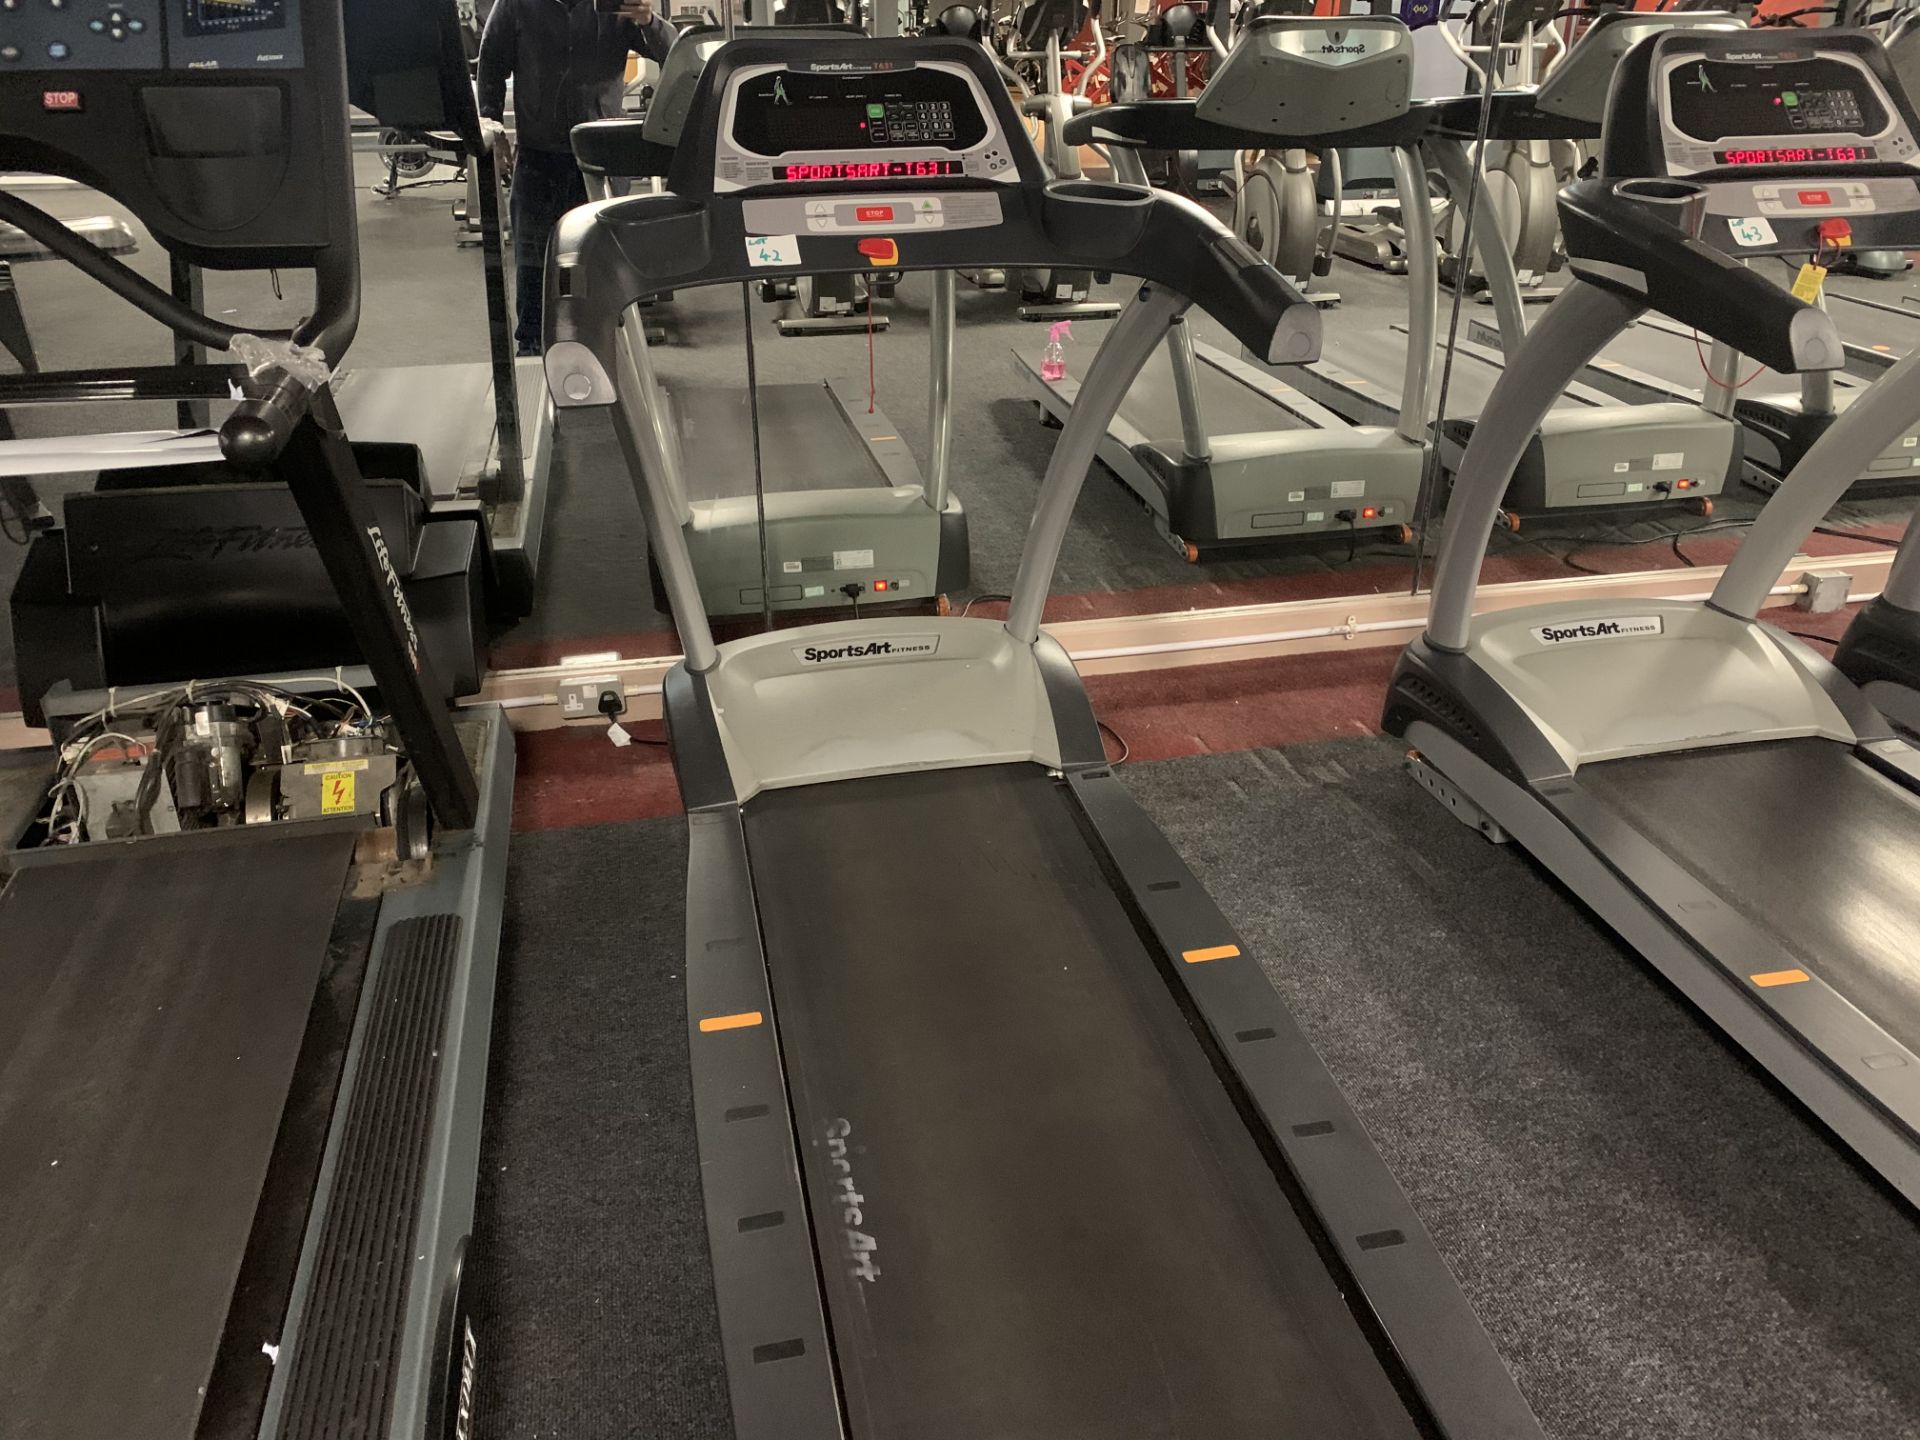 Sports Art Fitness Treadmill T631 Machine